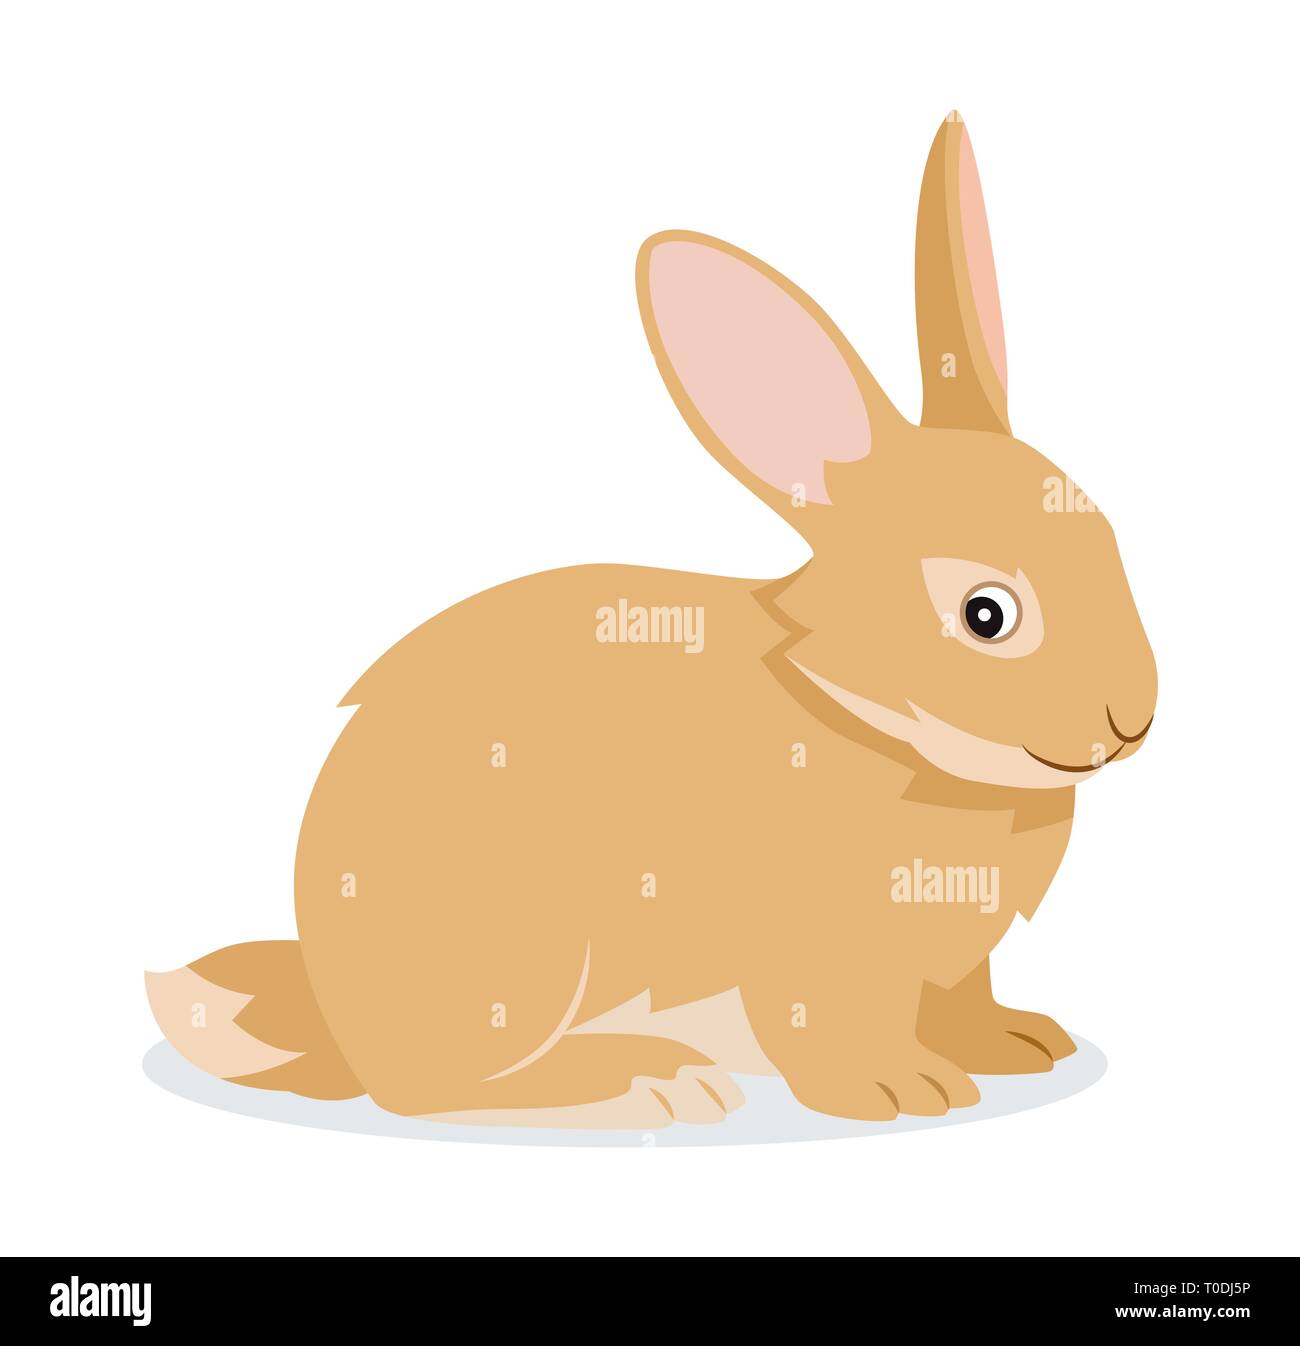 Carino icona di coniglio isolato, piccola fluffy pet con lunghe orecchie, animale domestico, illustrazione vettoriale Illustrazione Vettoriale